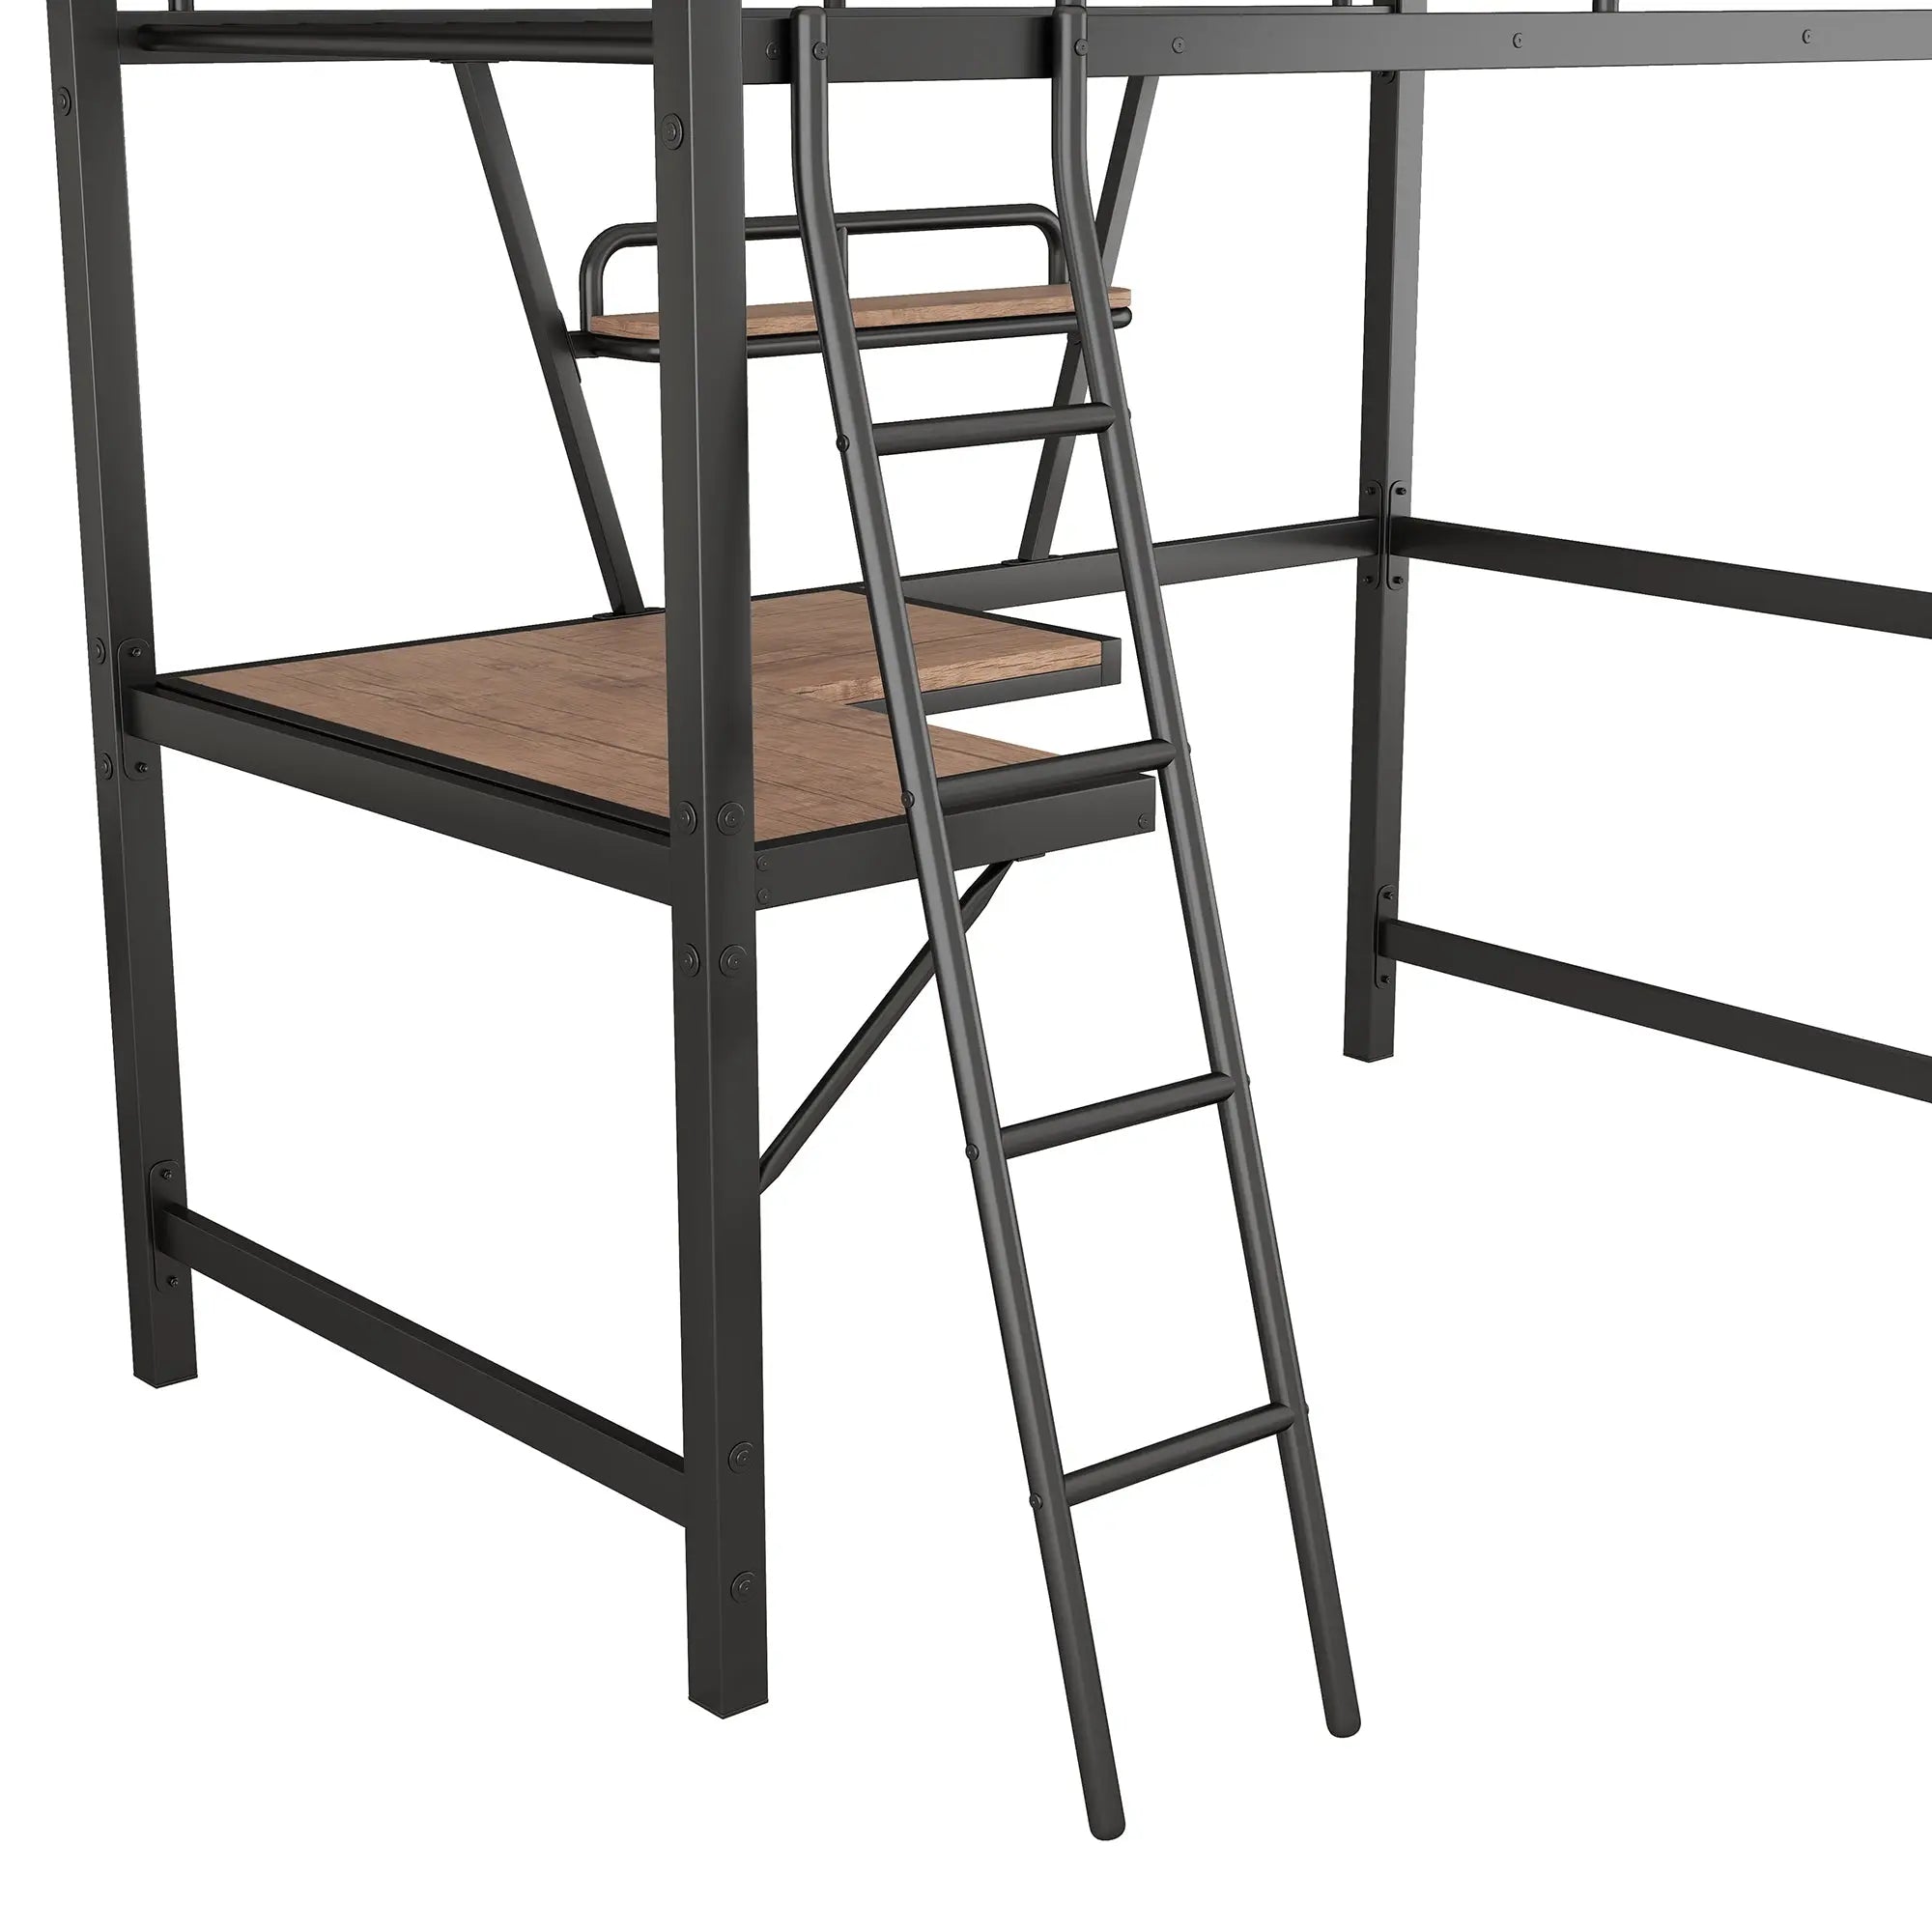 Bellemave® Metal&MDF High Loft Bed with Desk and Shelf Bellemave®